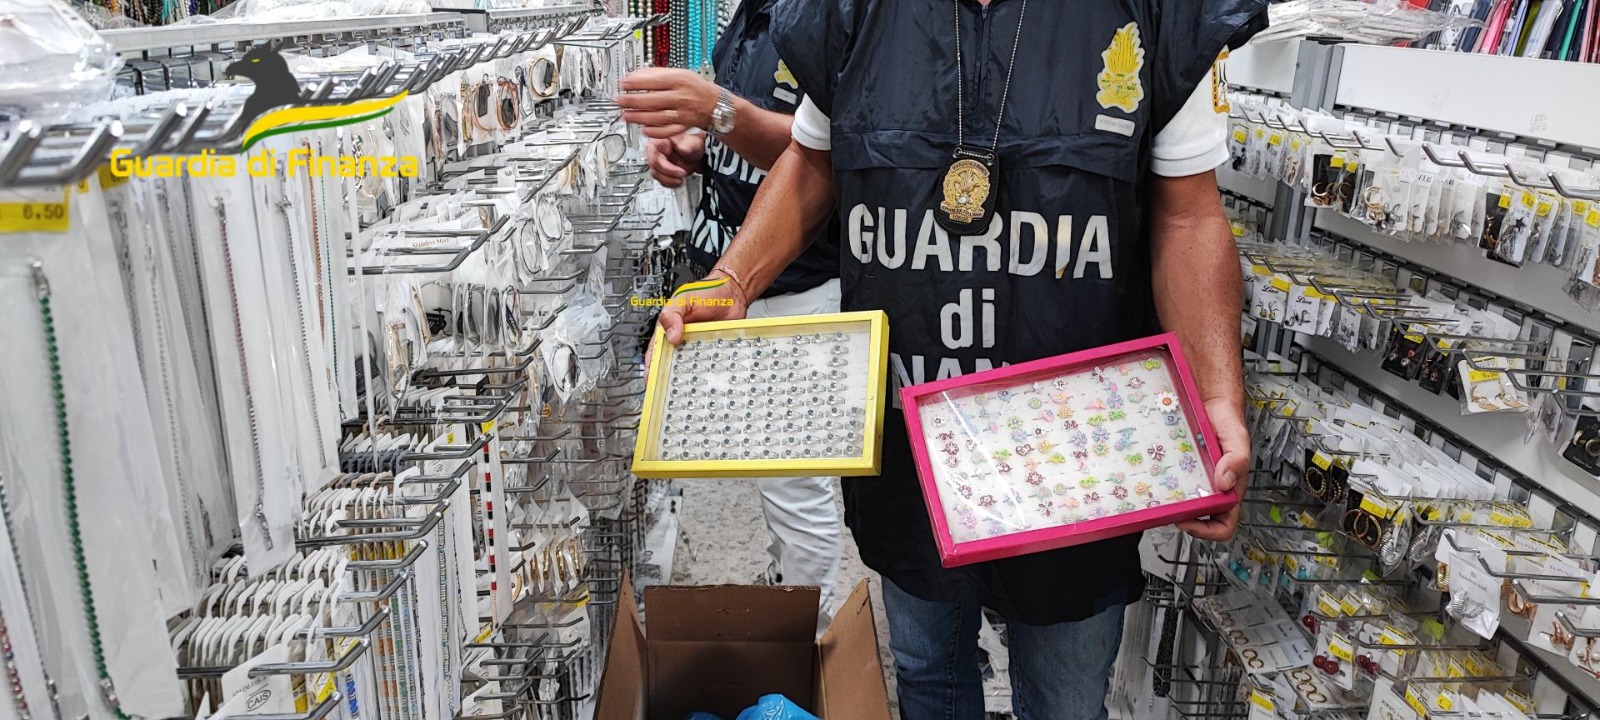 Pescara – “Stop Fake”: finanza sequestra 50mila pezzi di bigiotteria illegale